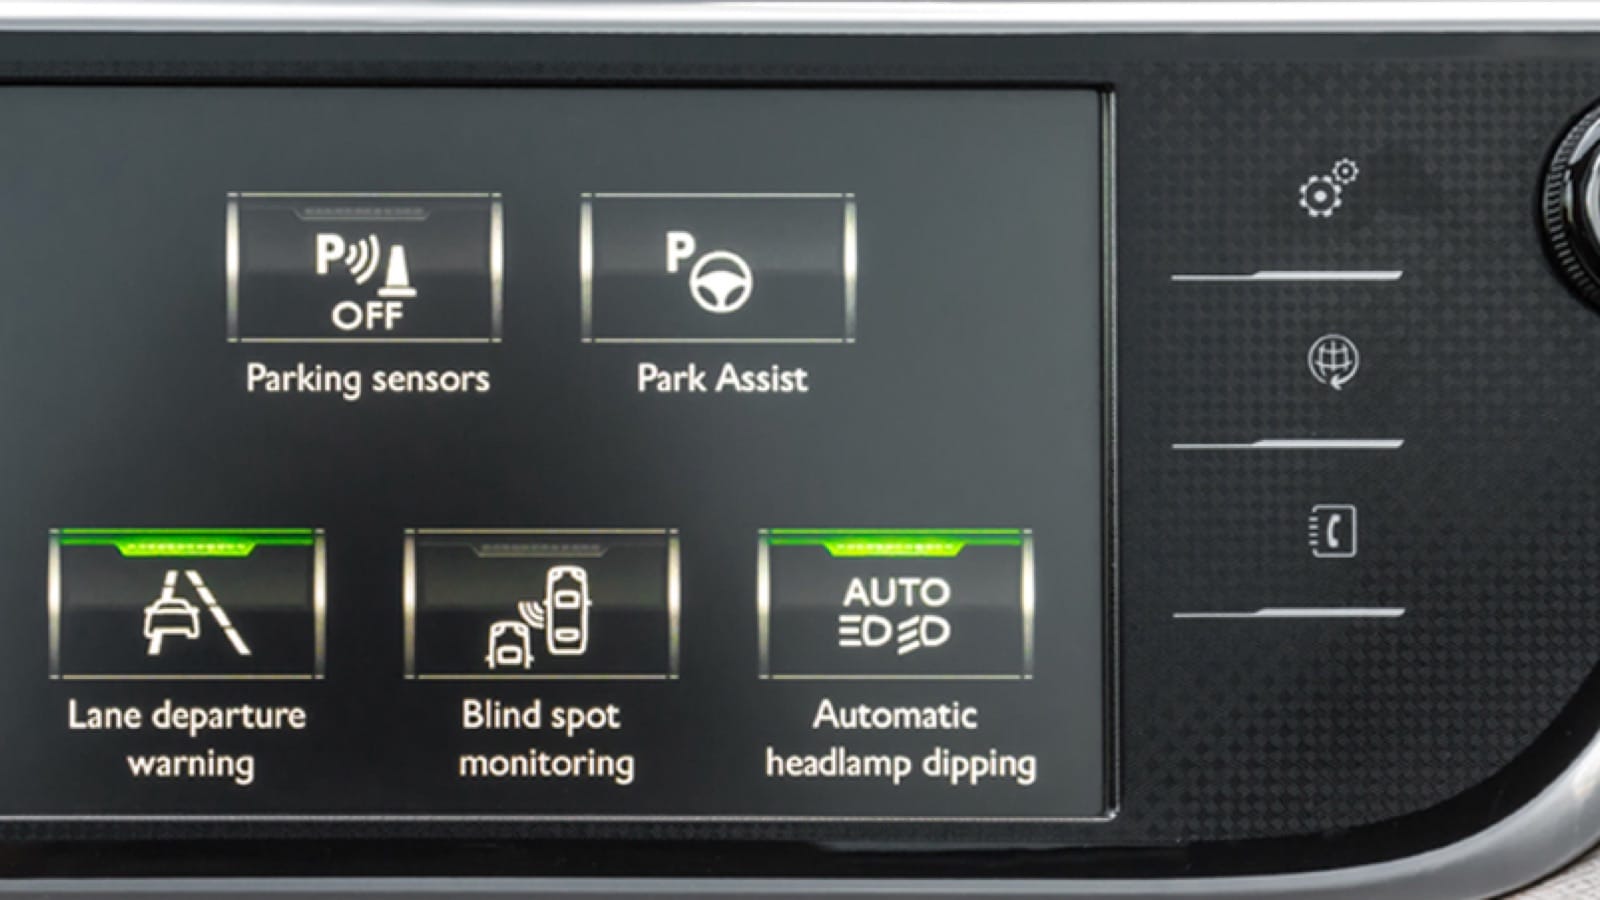 Digital car dashboard